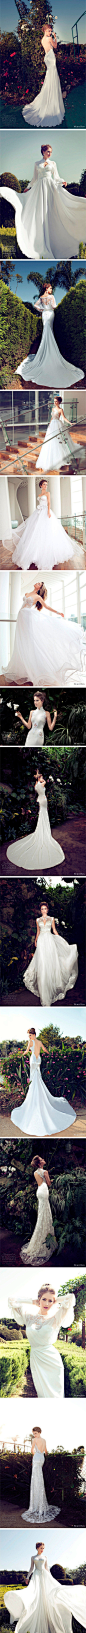 来自以色列的婚纱设计师Nurit Hen唯美婚纱系列，唯美薄纱镂空嫁衣。